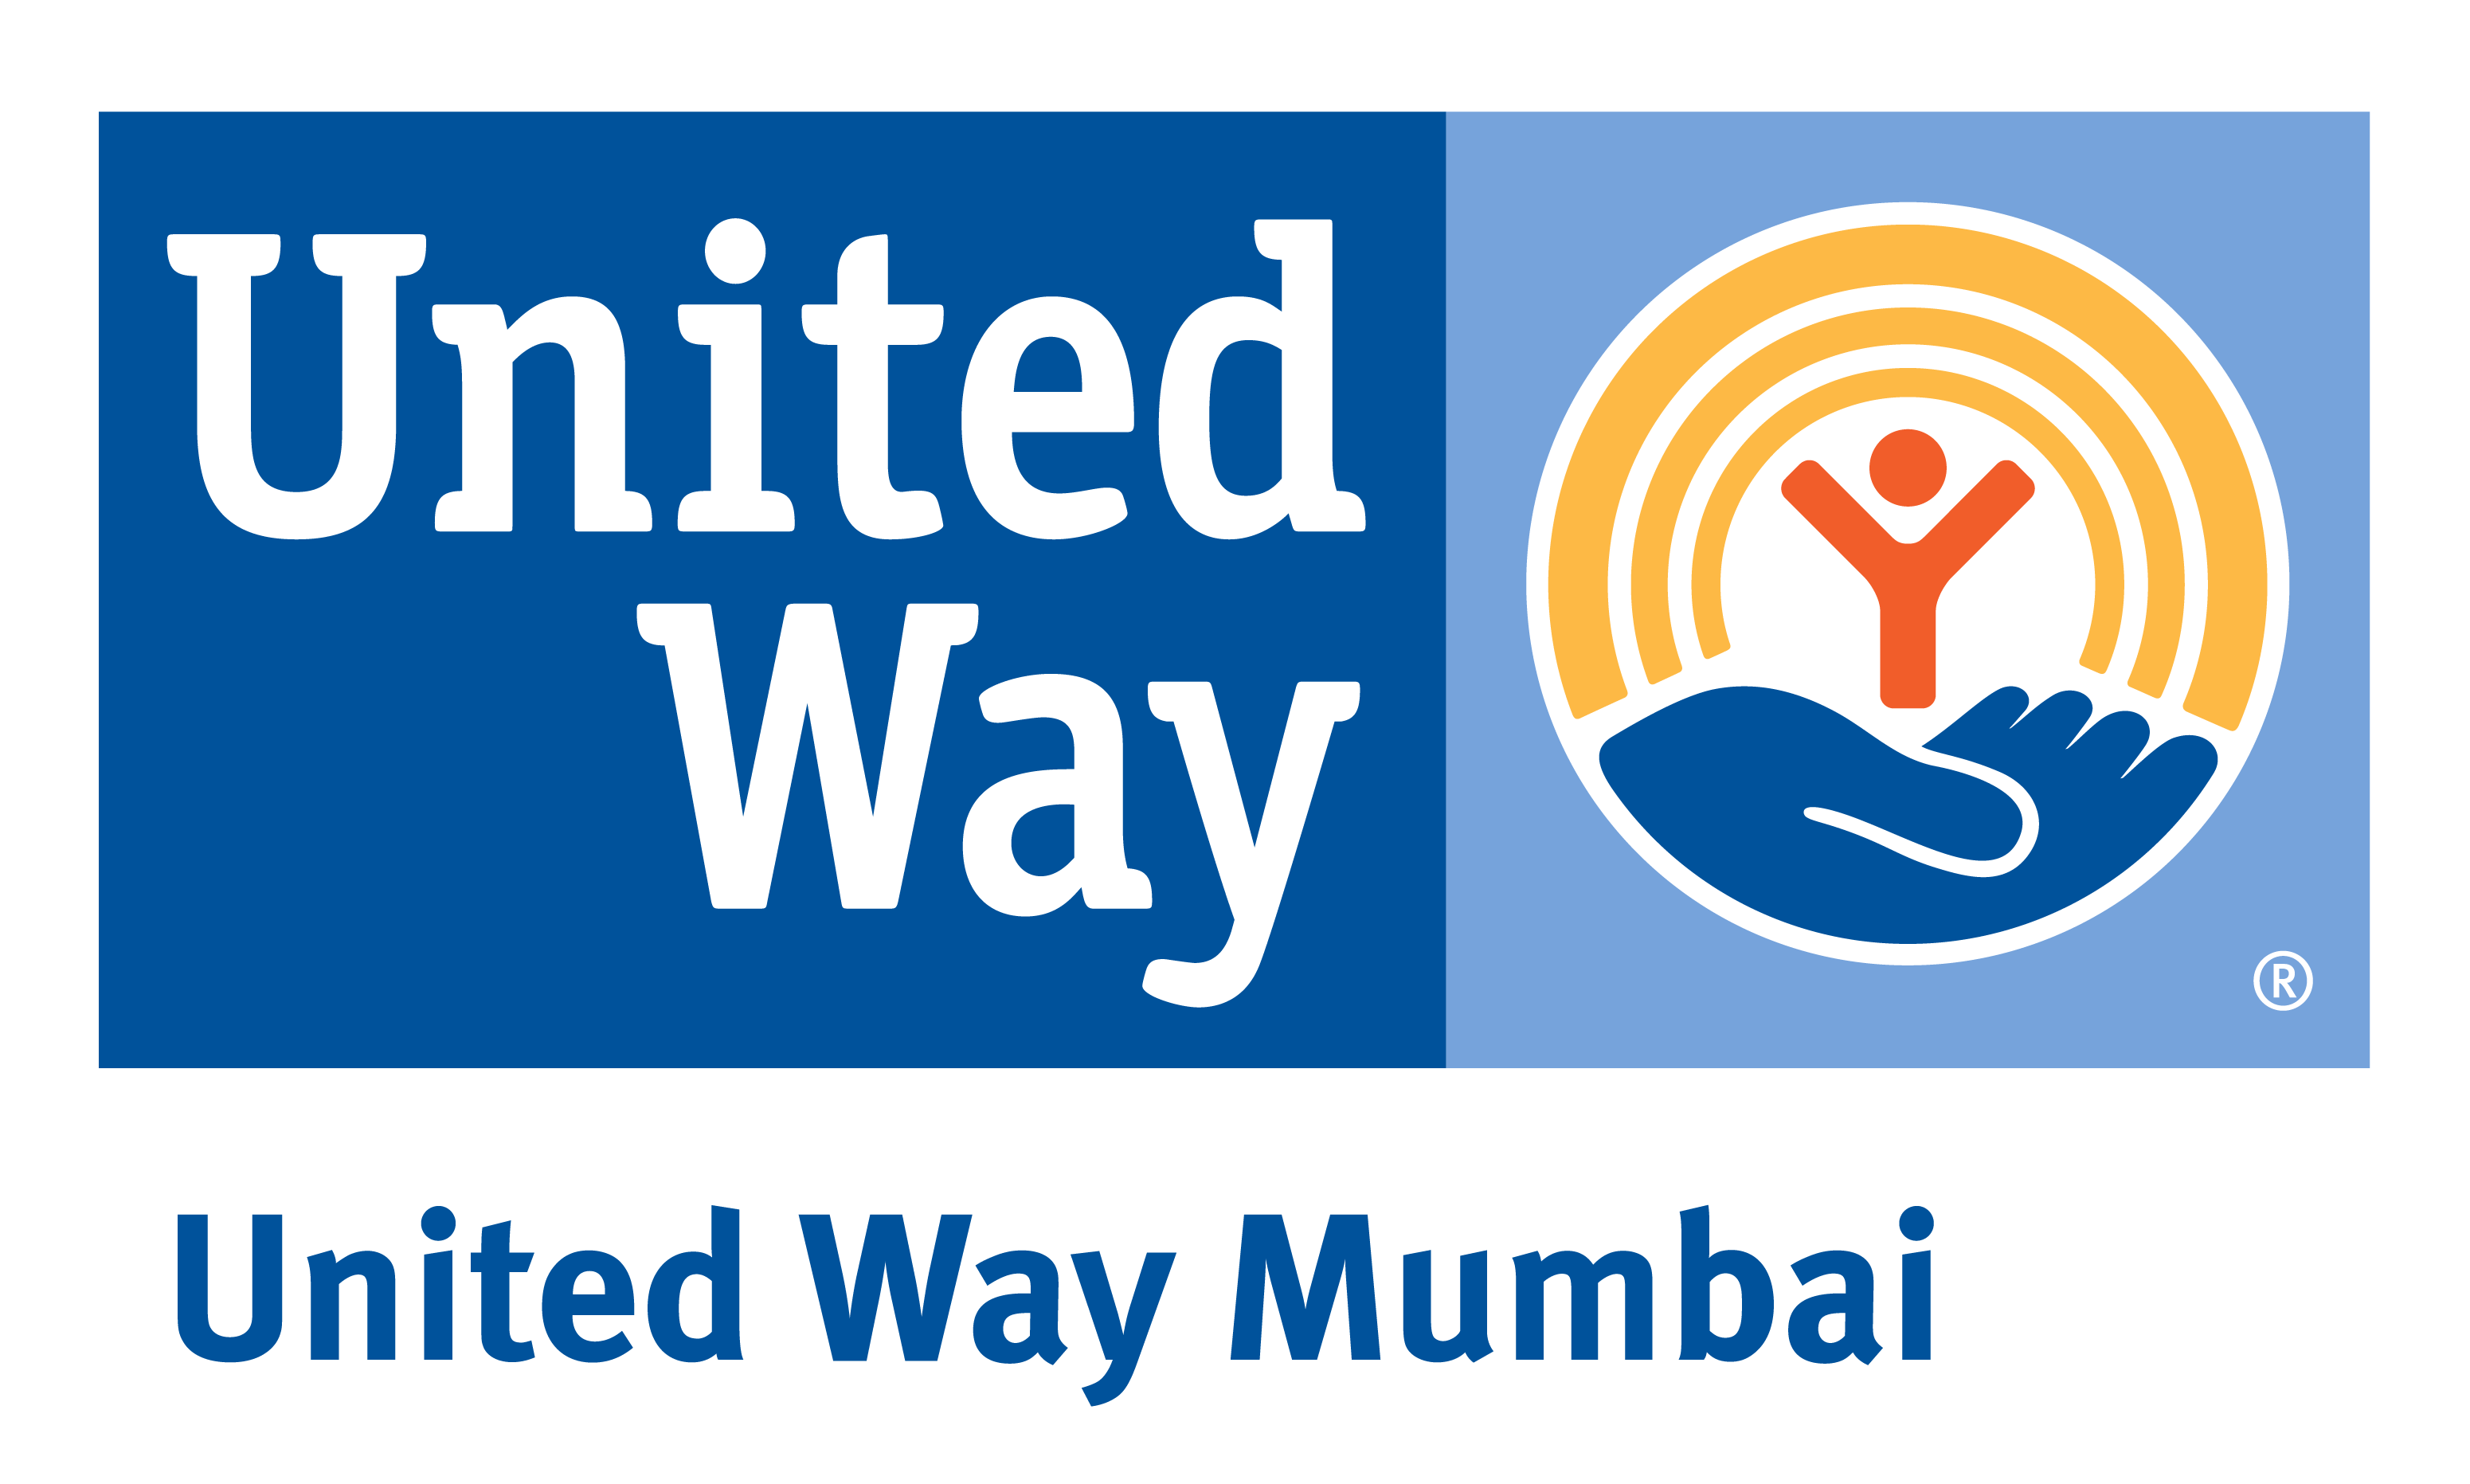 UNITED WAY MUMBAI